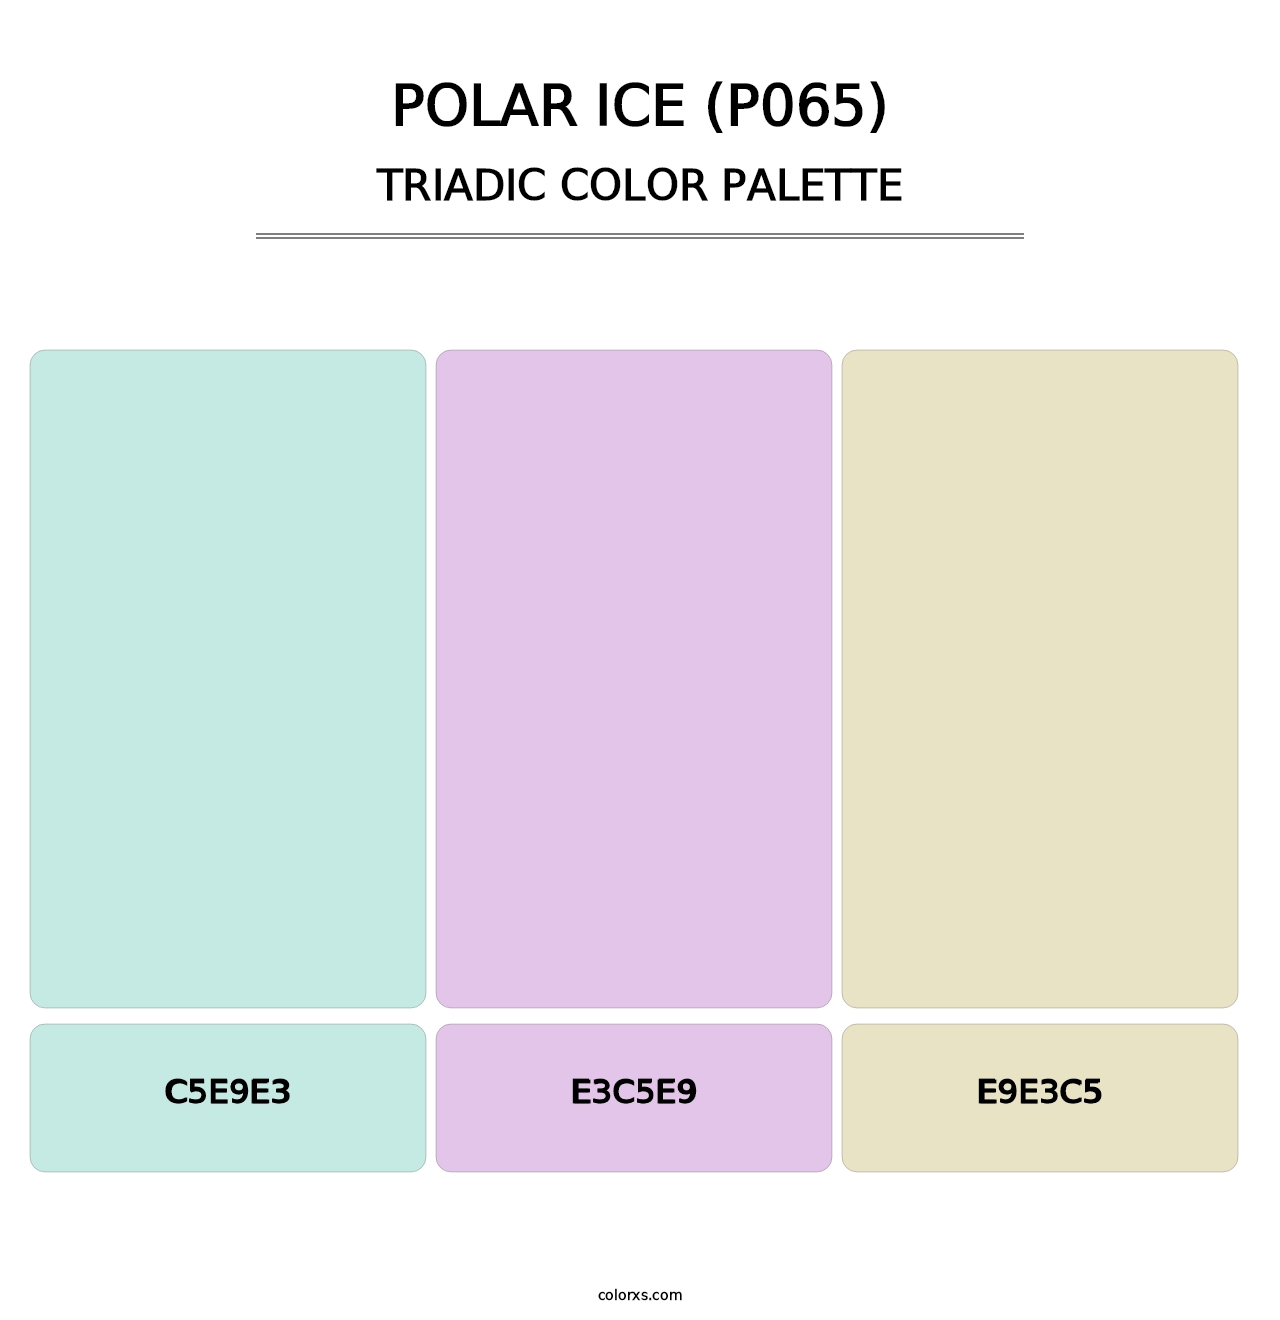 Polar Ice (P065) - Triadic Color Palette